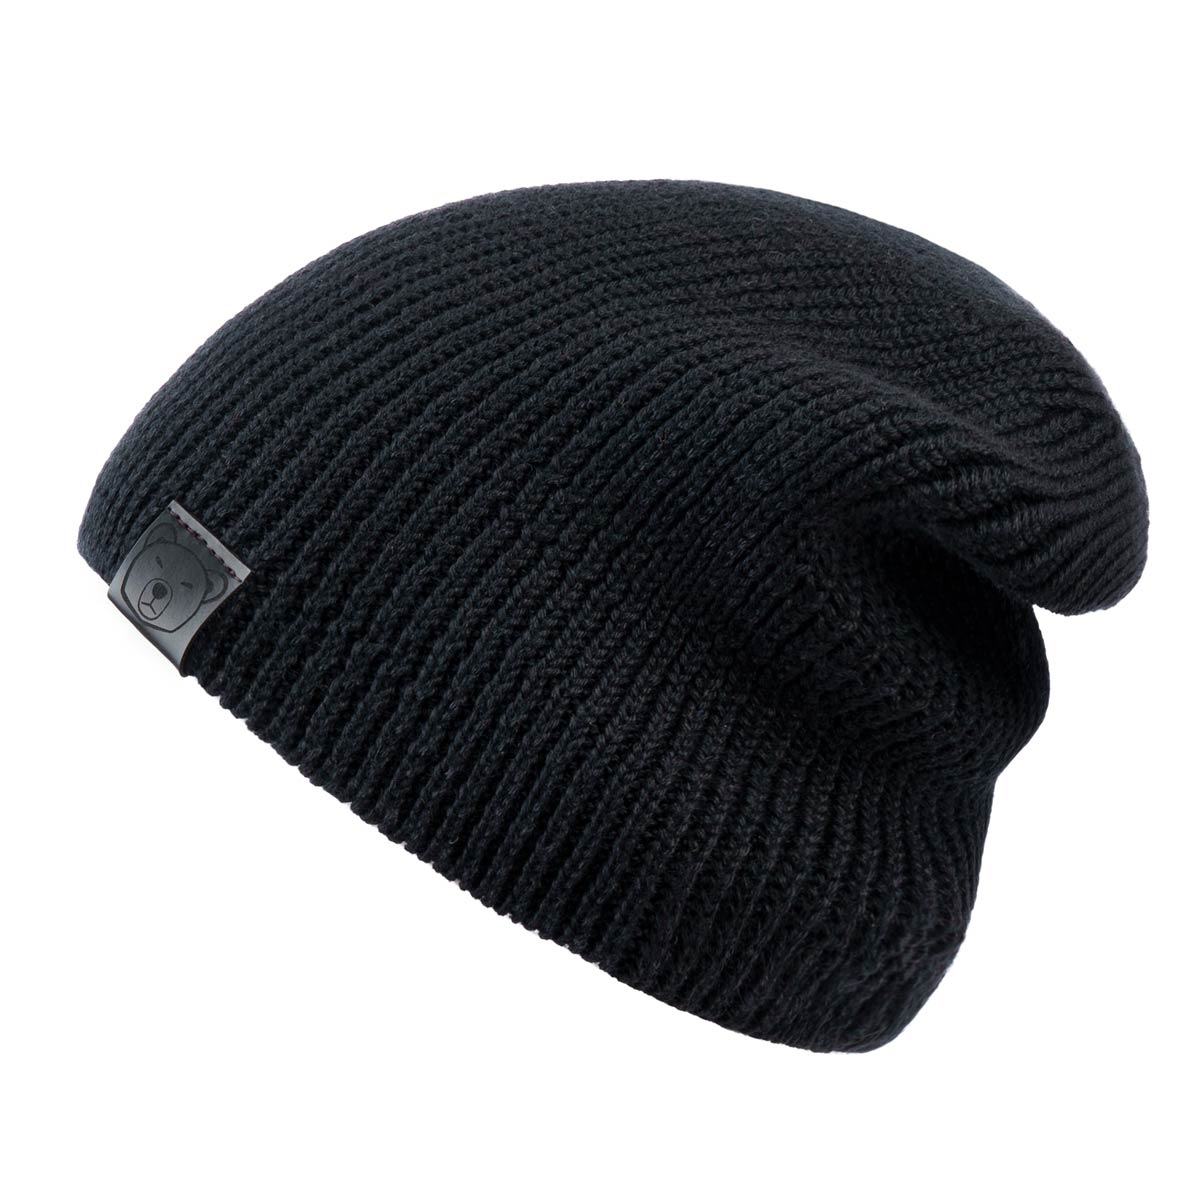 bonnet-hiver-noir-laine-merinos-chaud-mode--CP-01687